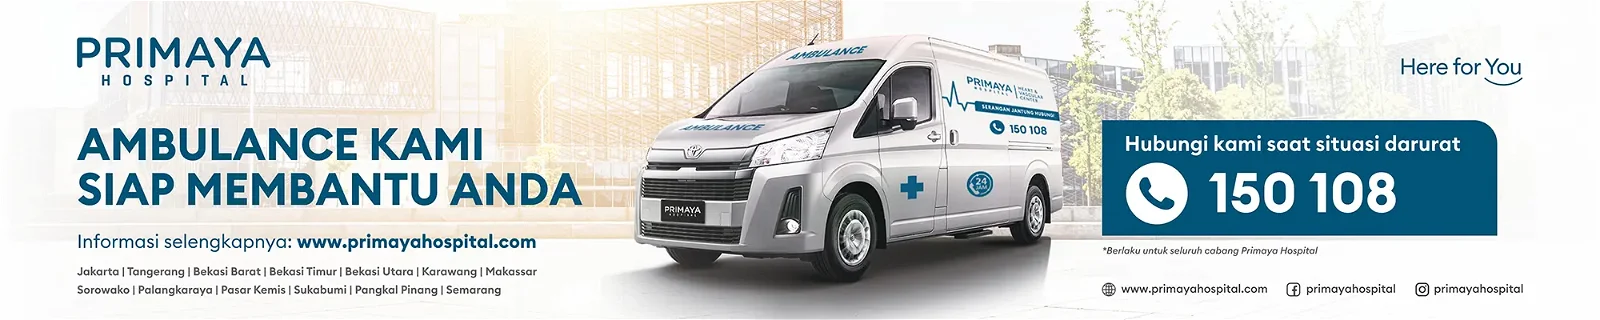 Ambulance Call Center - Nomor Ambulans - Nomor Ambulance